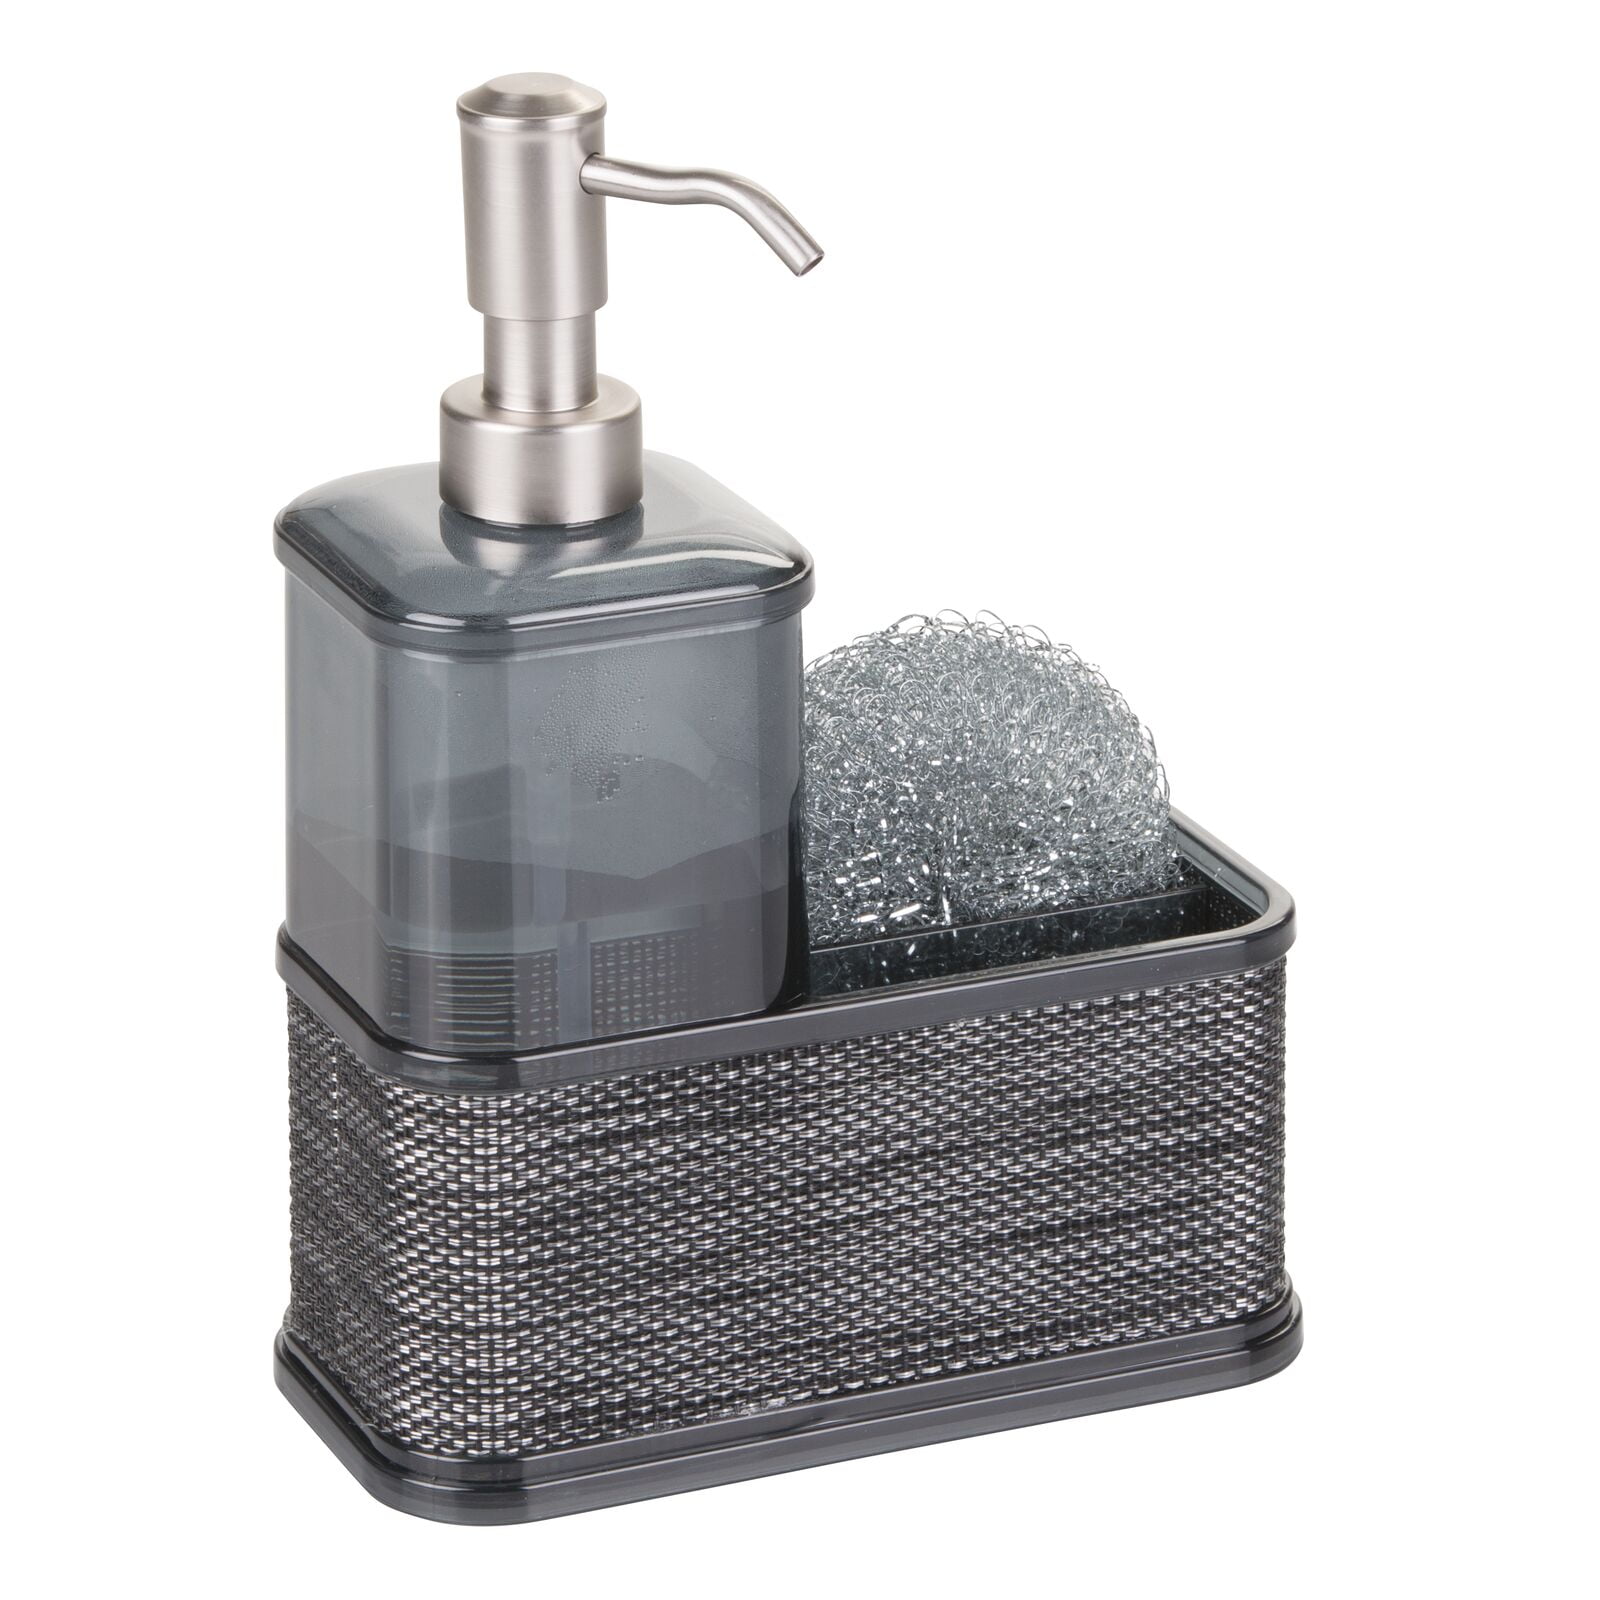 Stainless Steel Sponge Holder & Soap Dispenser by PantryMate